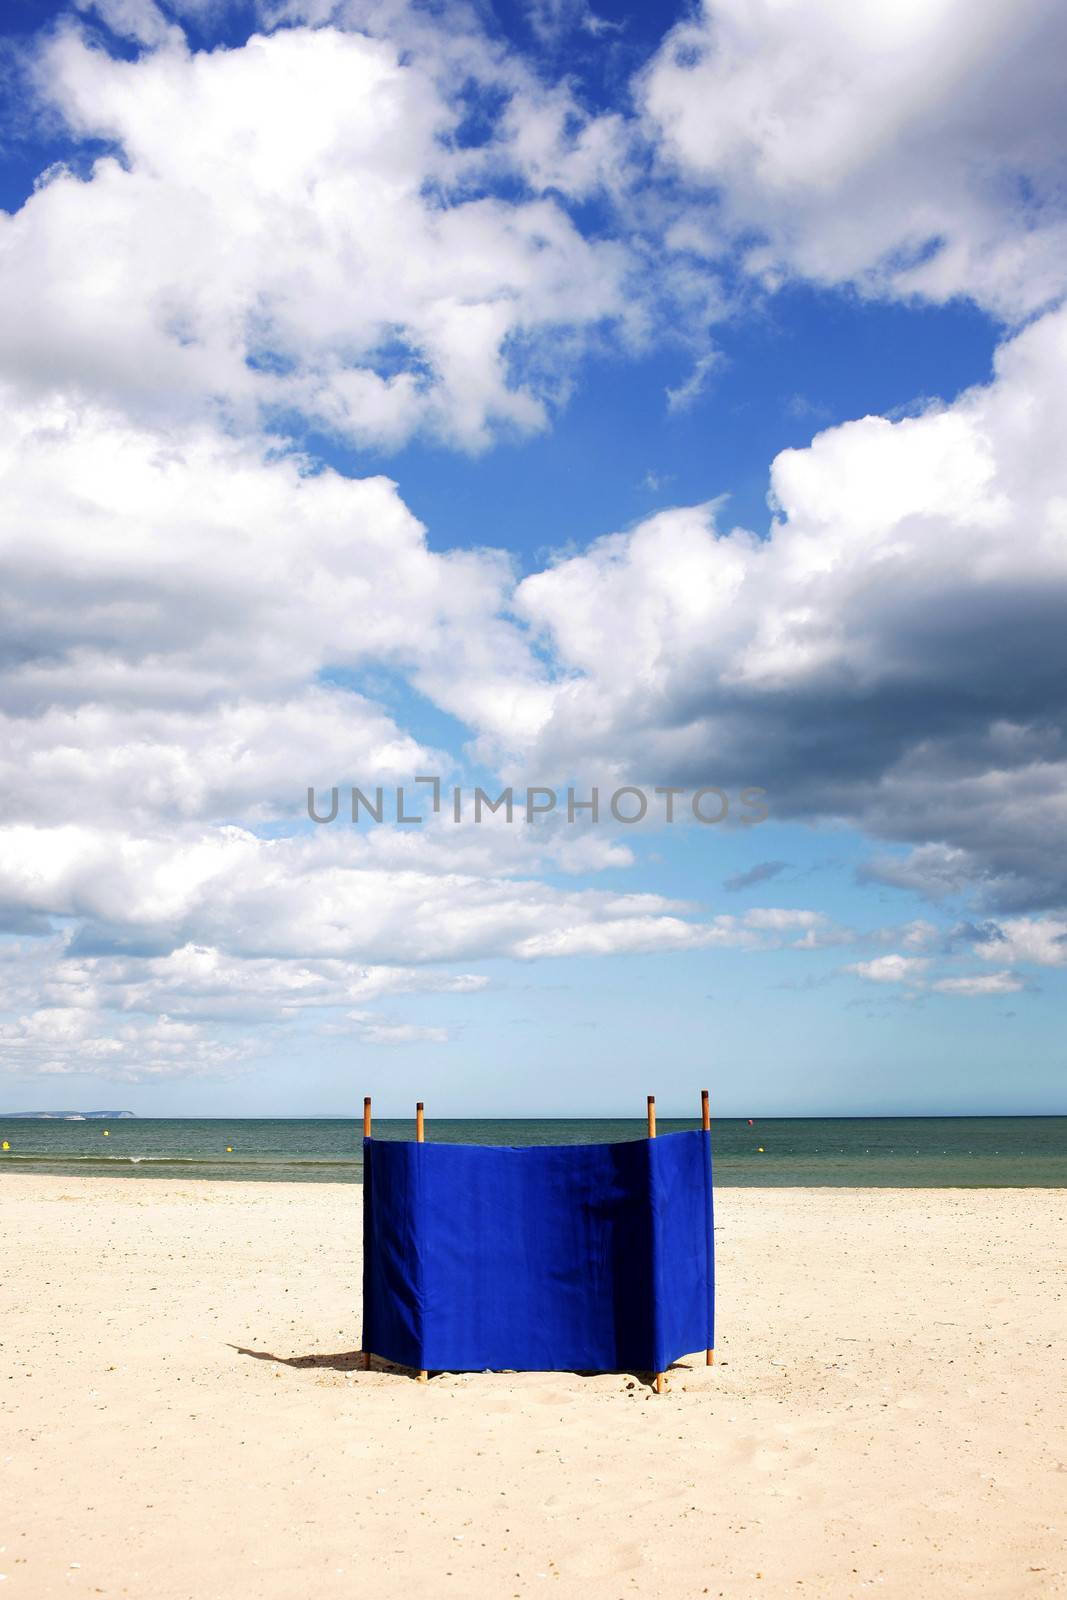 Beach Wind Breaker by Whiteboxmedia